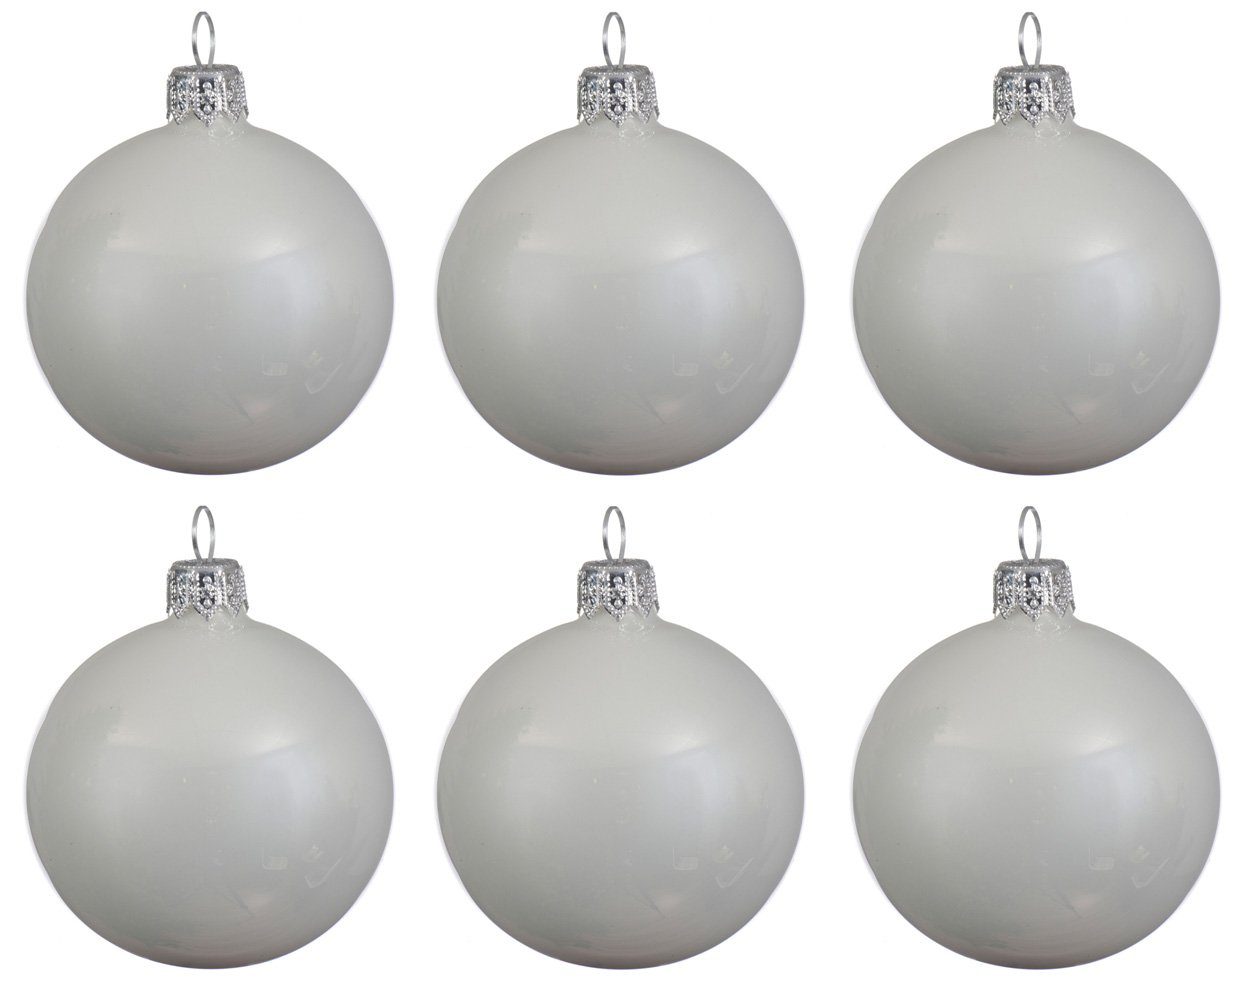 Decoris season decorations Weihnachtsbaumkugel, Weihnachtskugeln Glas 8cm mundgeblasen 6er Box - Winterweiß glänzend